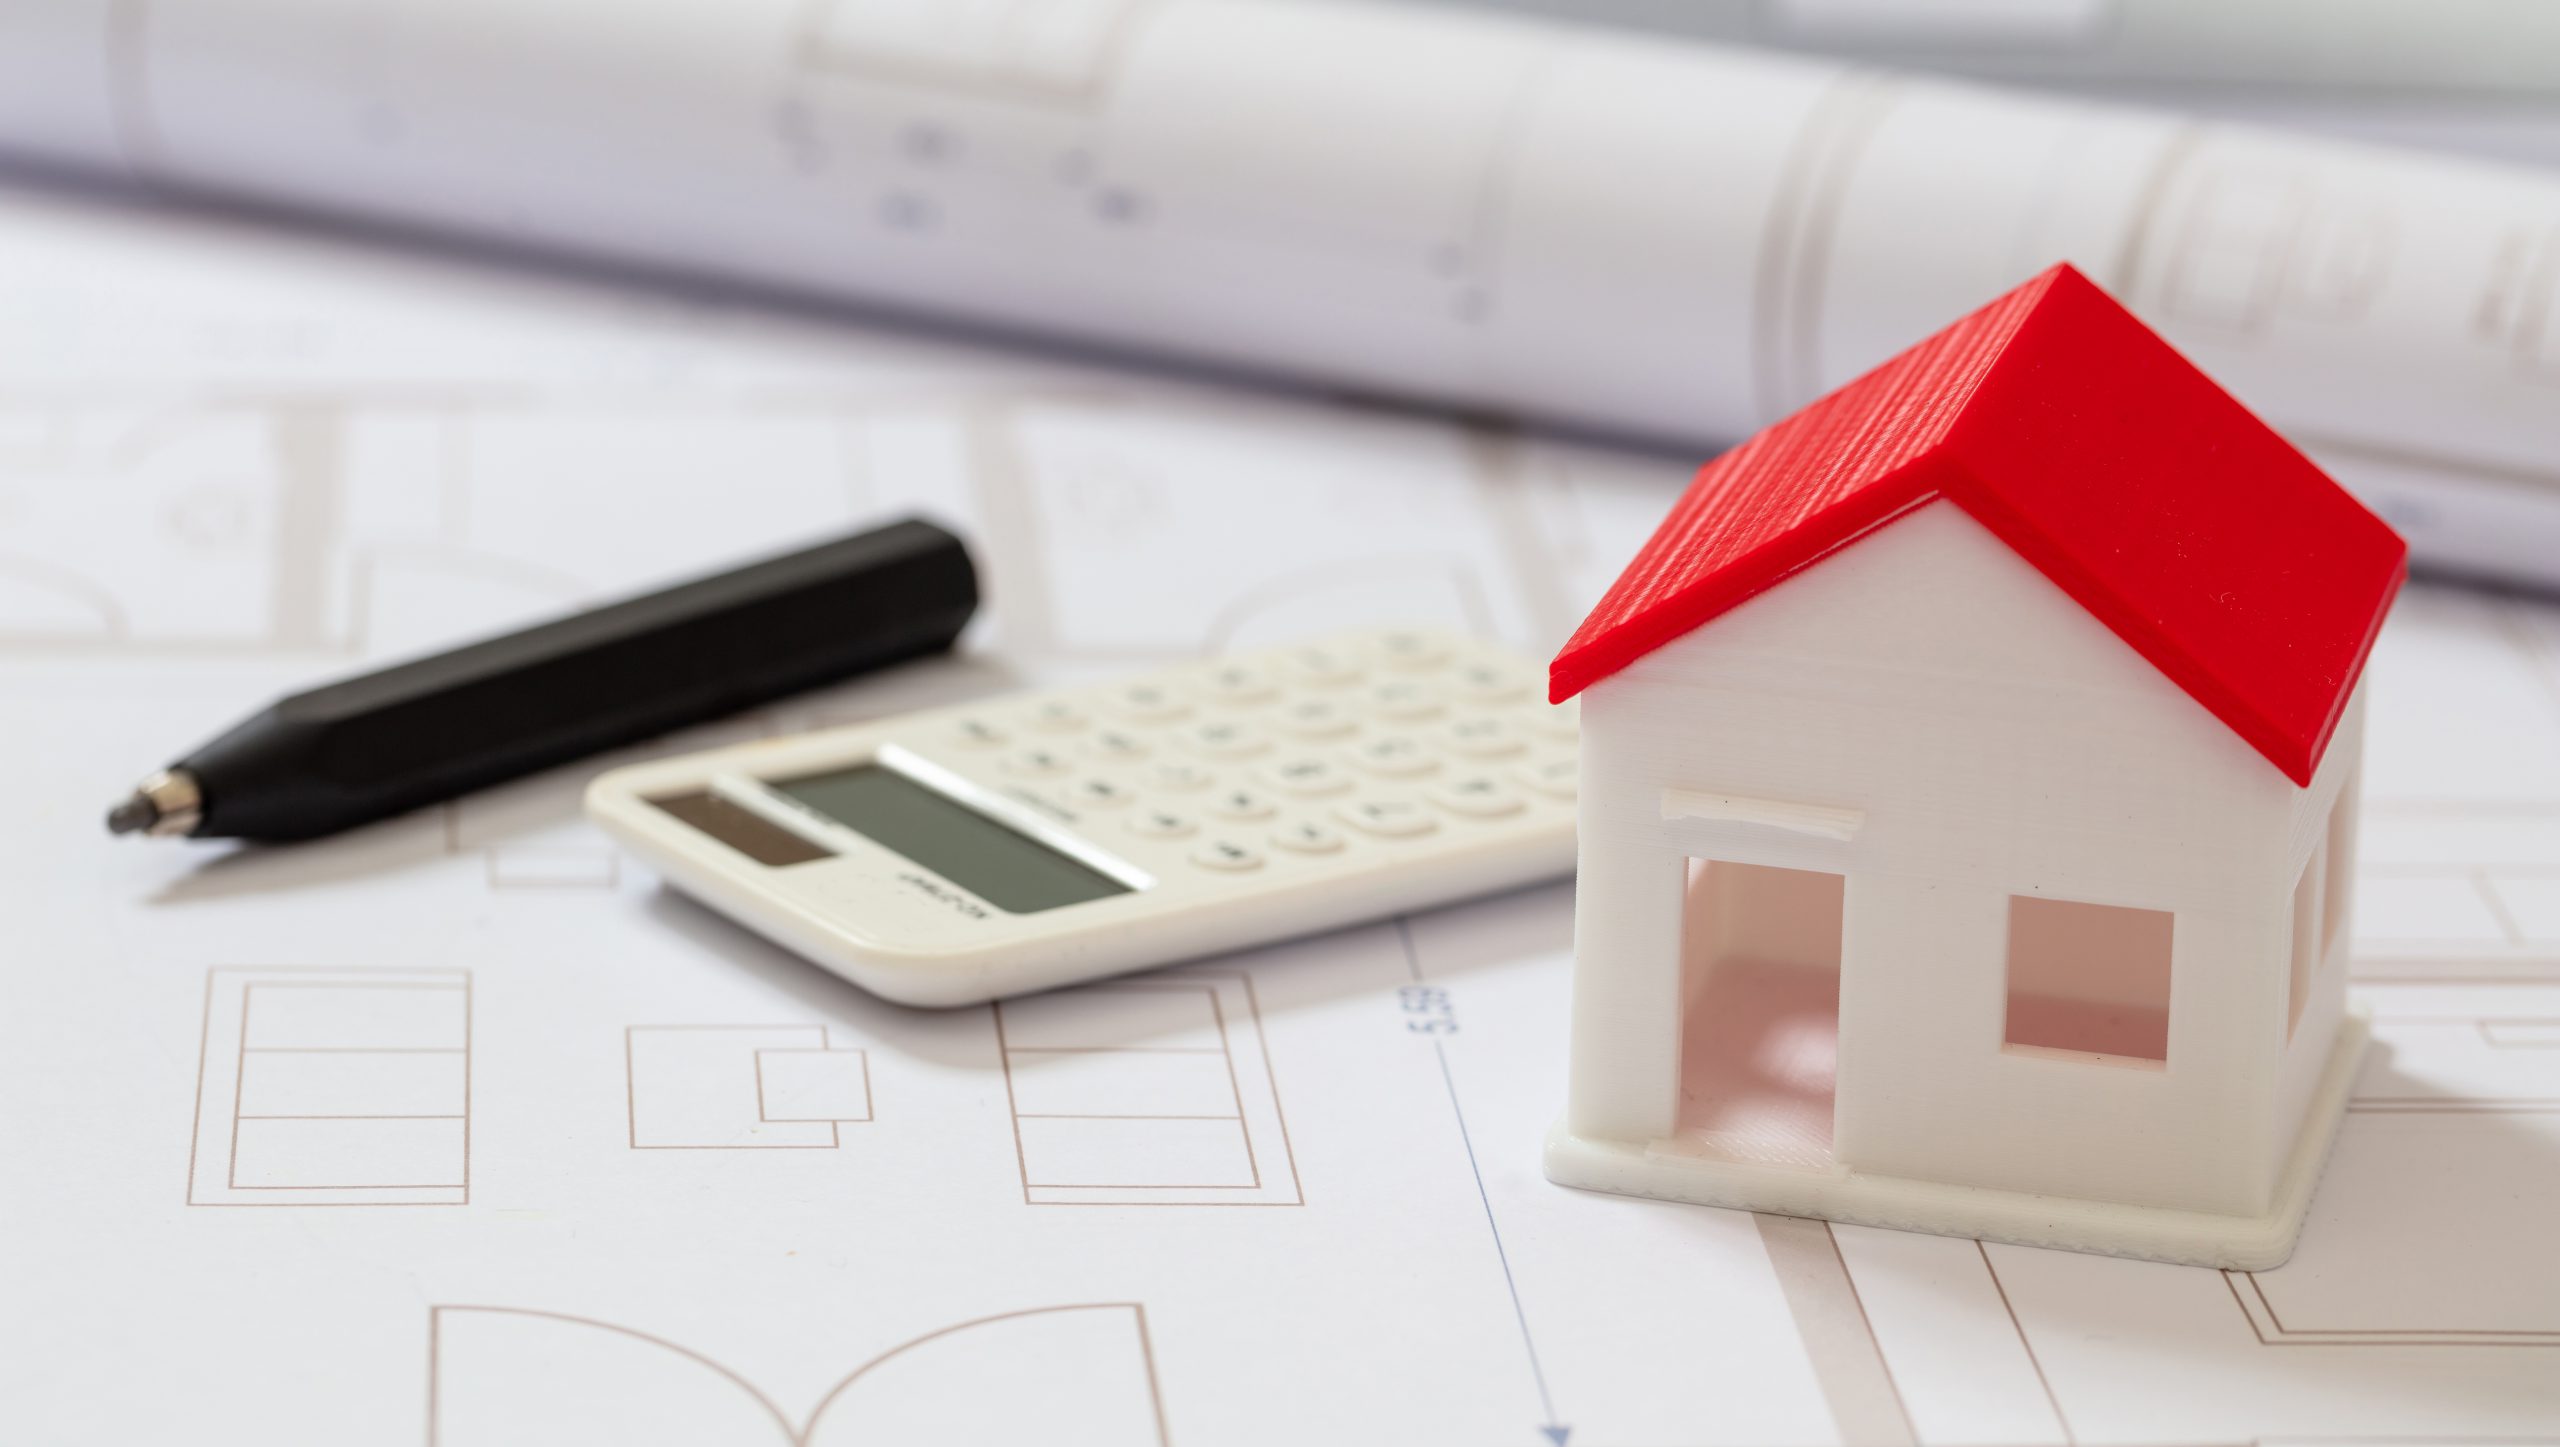 Hausbau Kosten vorab berechnen - Kann ich mir das Haus & den Hausbau leisten? - Finanzierungsfragen klären & beraten lassen